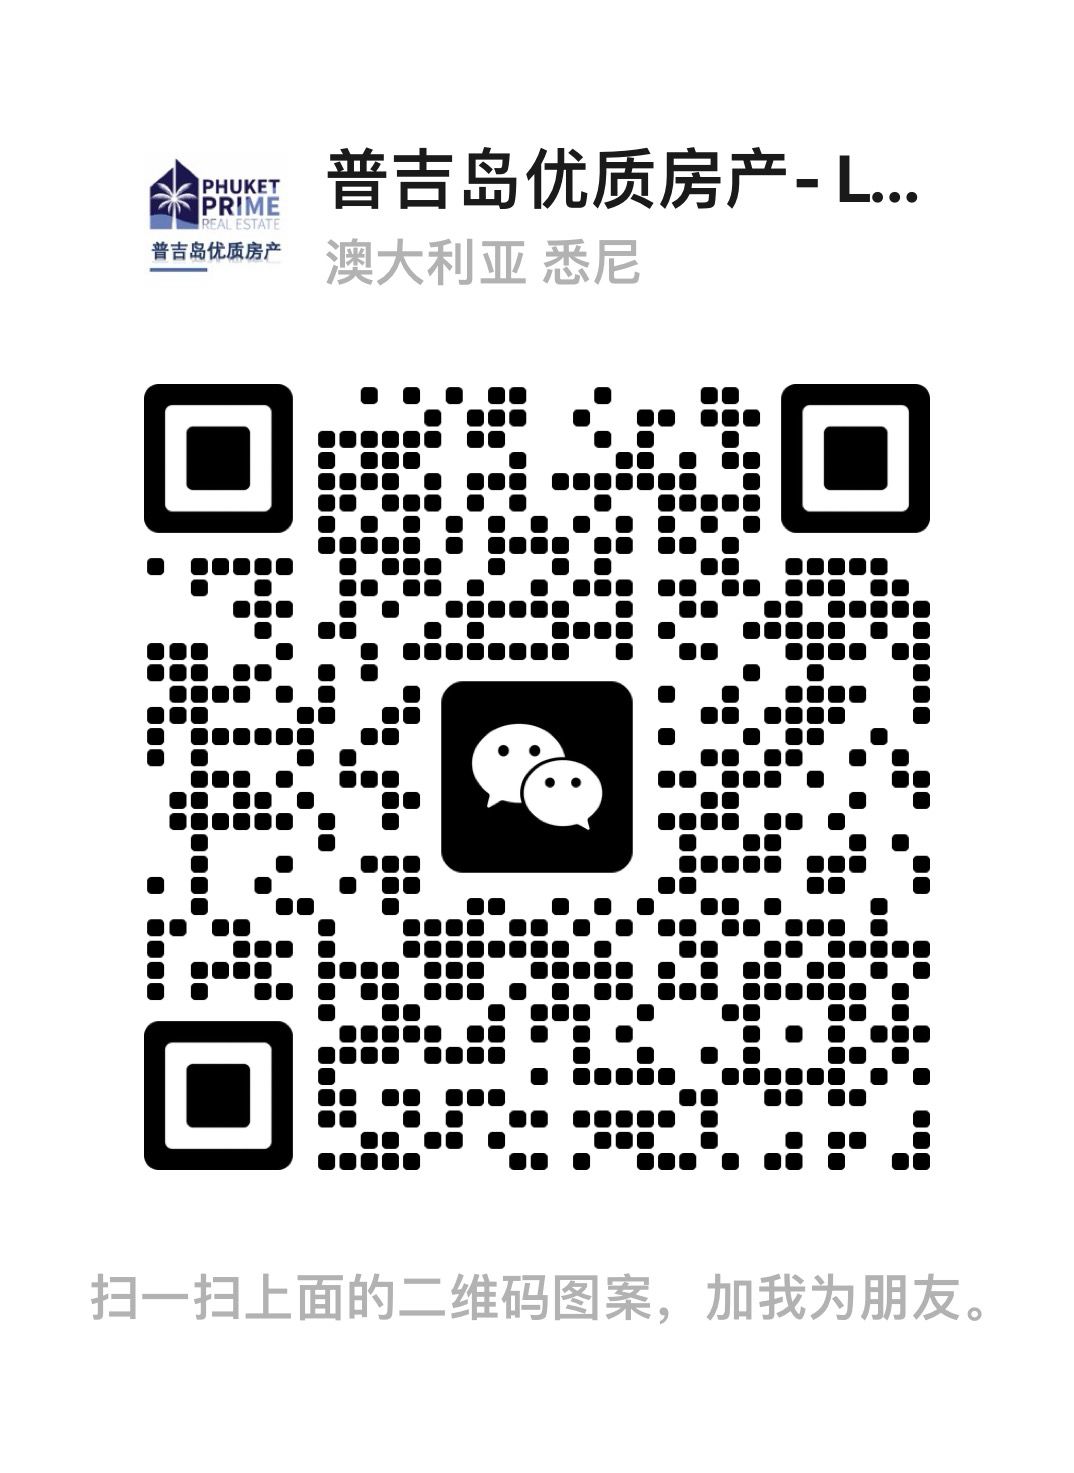 WeChat Popup